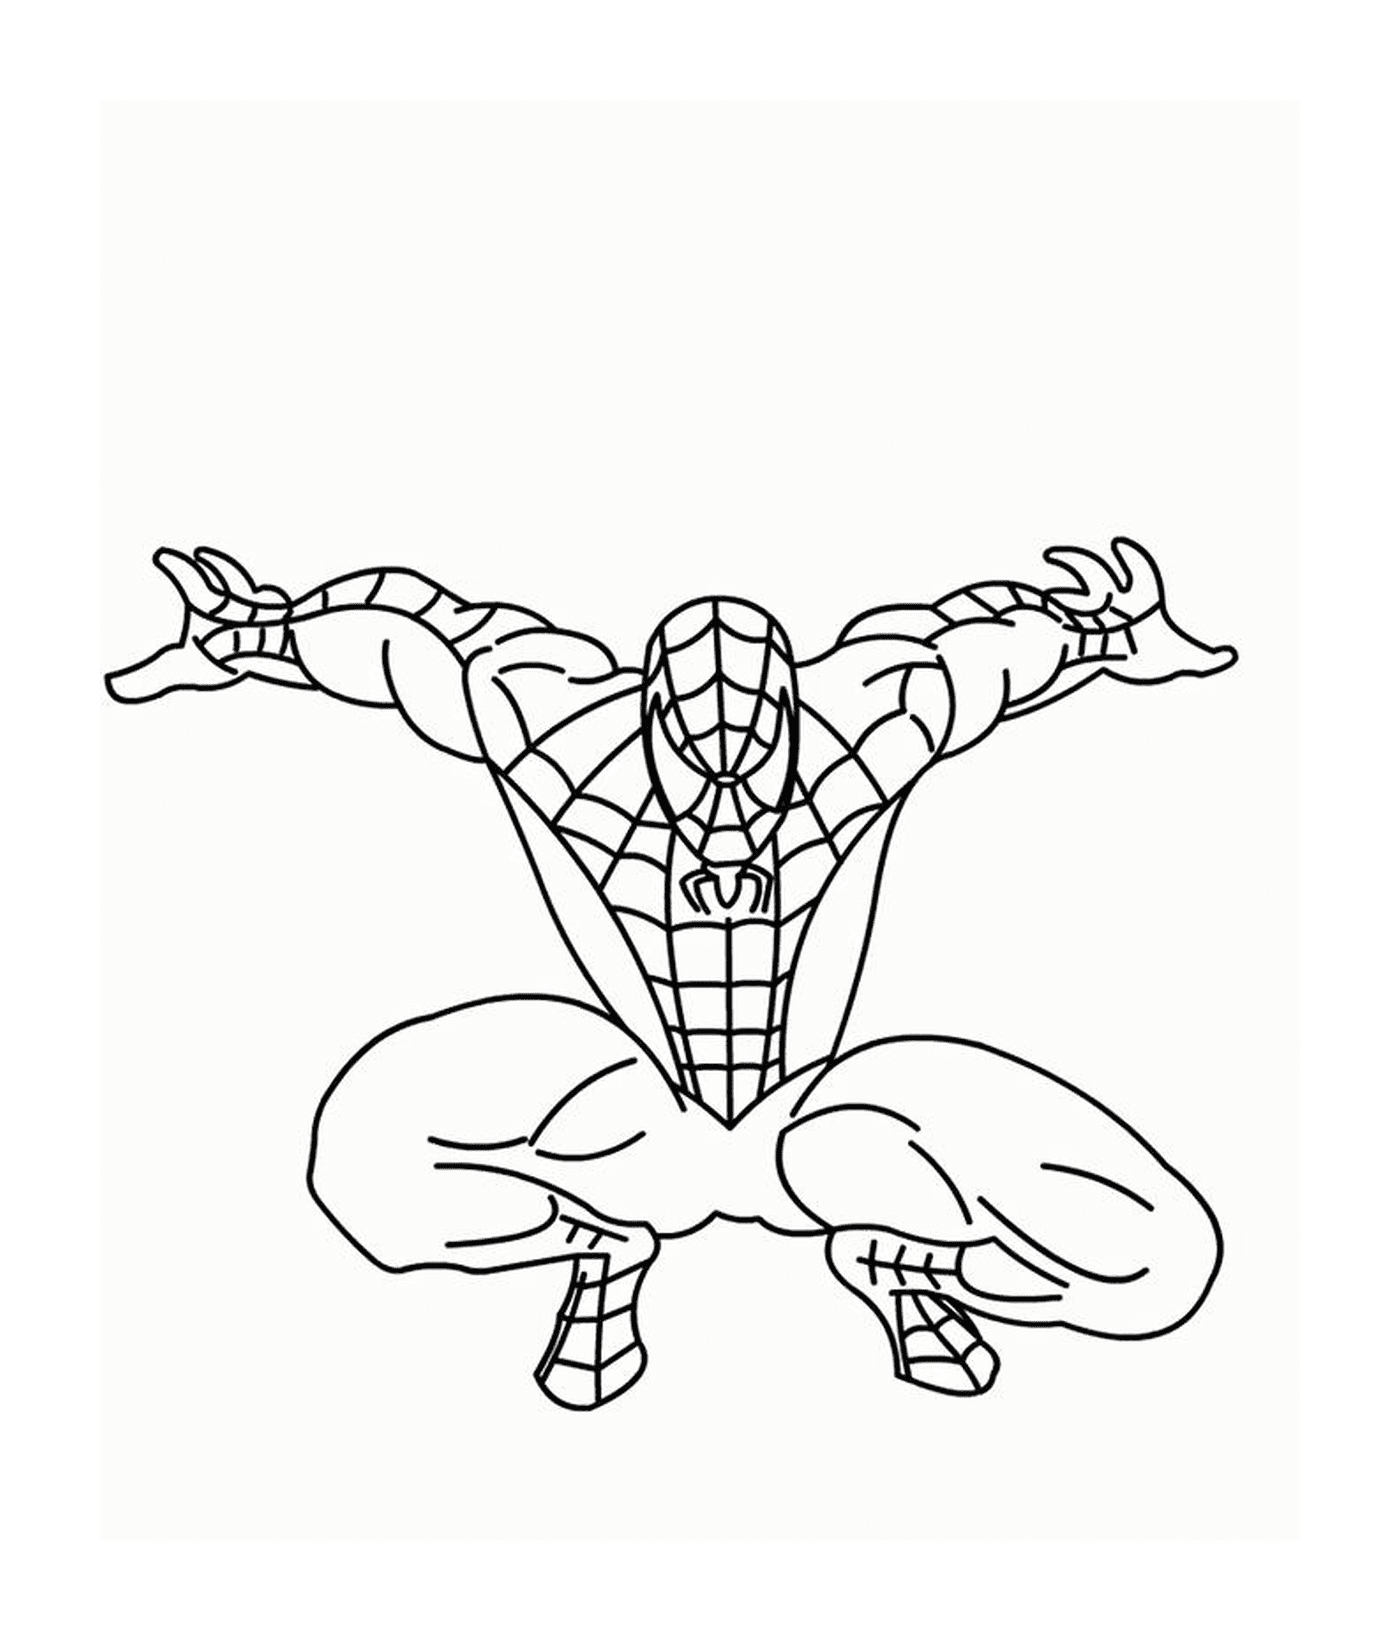  Spiderman pronto a saltare 